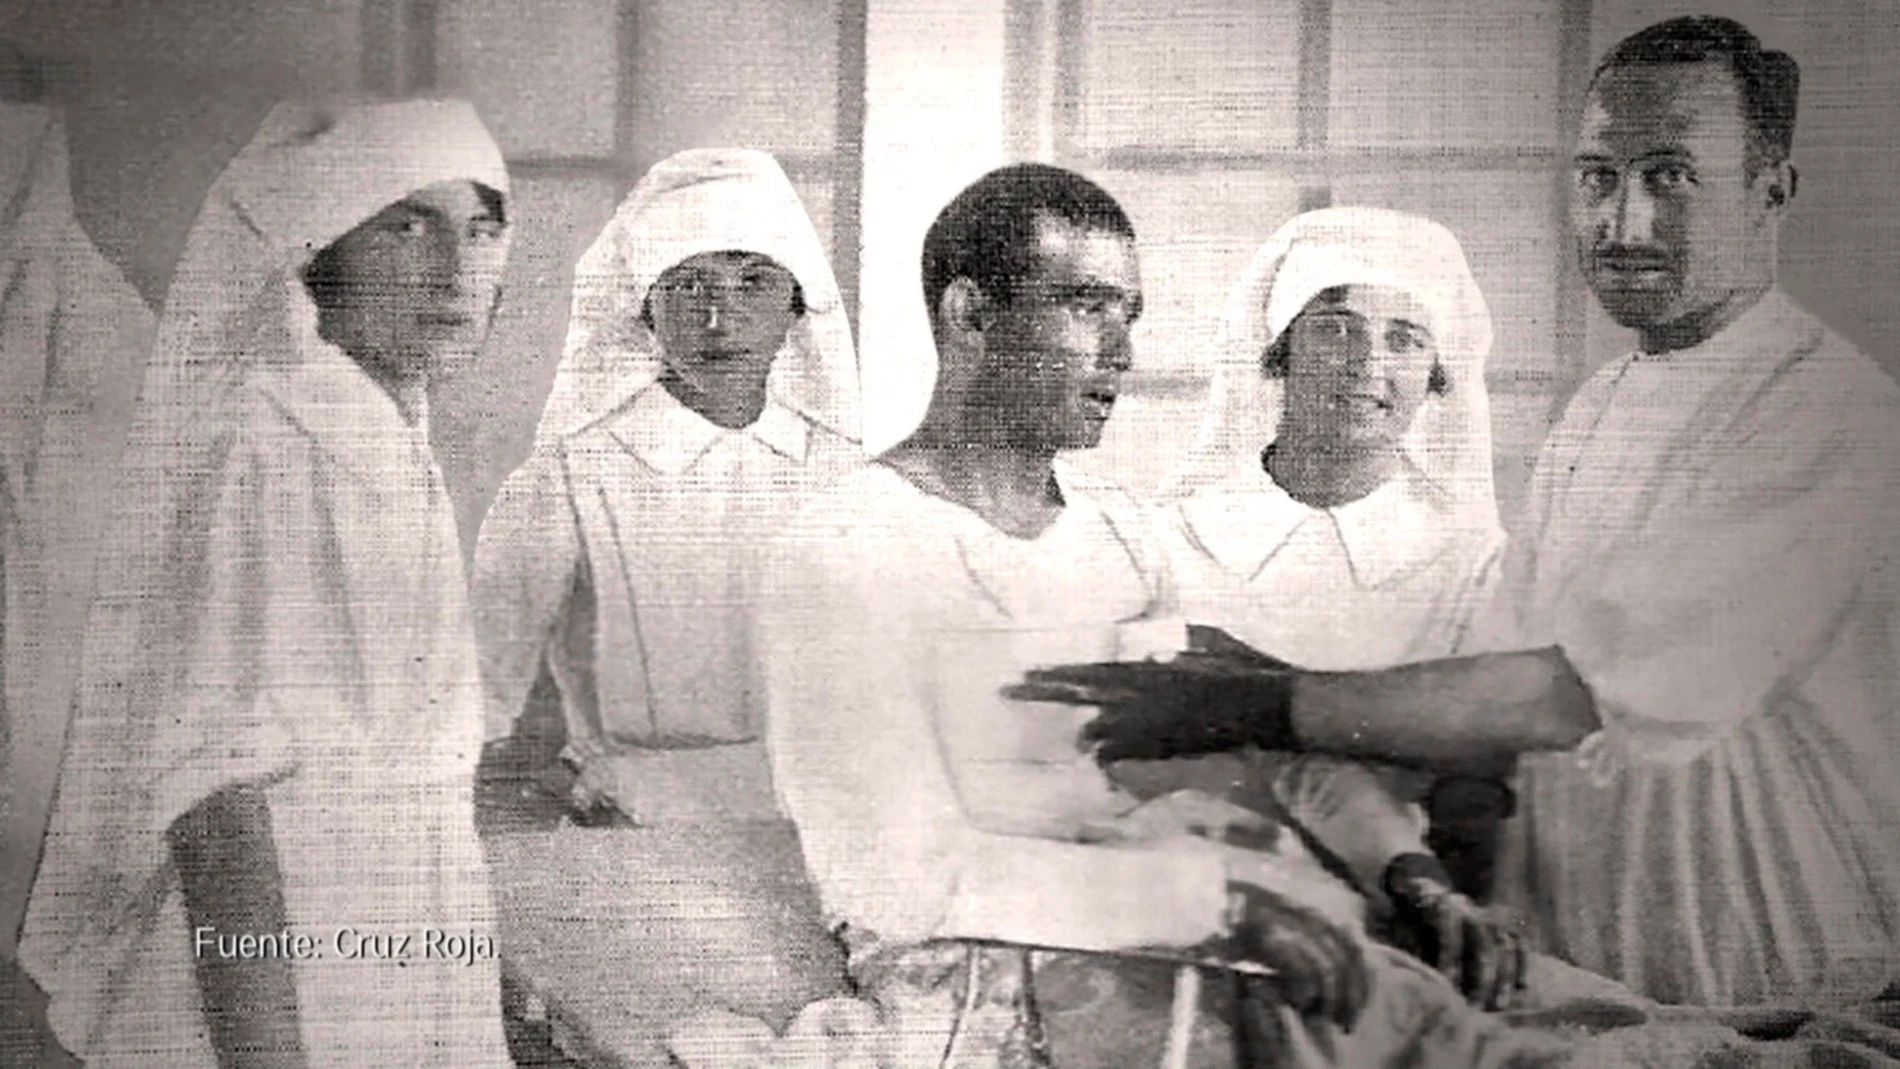 ¿Cómo vivían las Damas Enfermeras en los años 20?